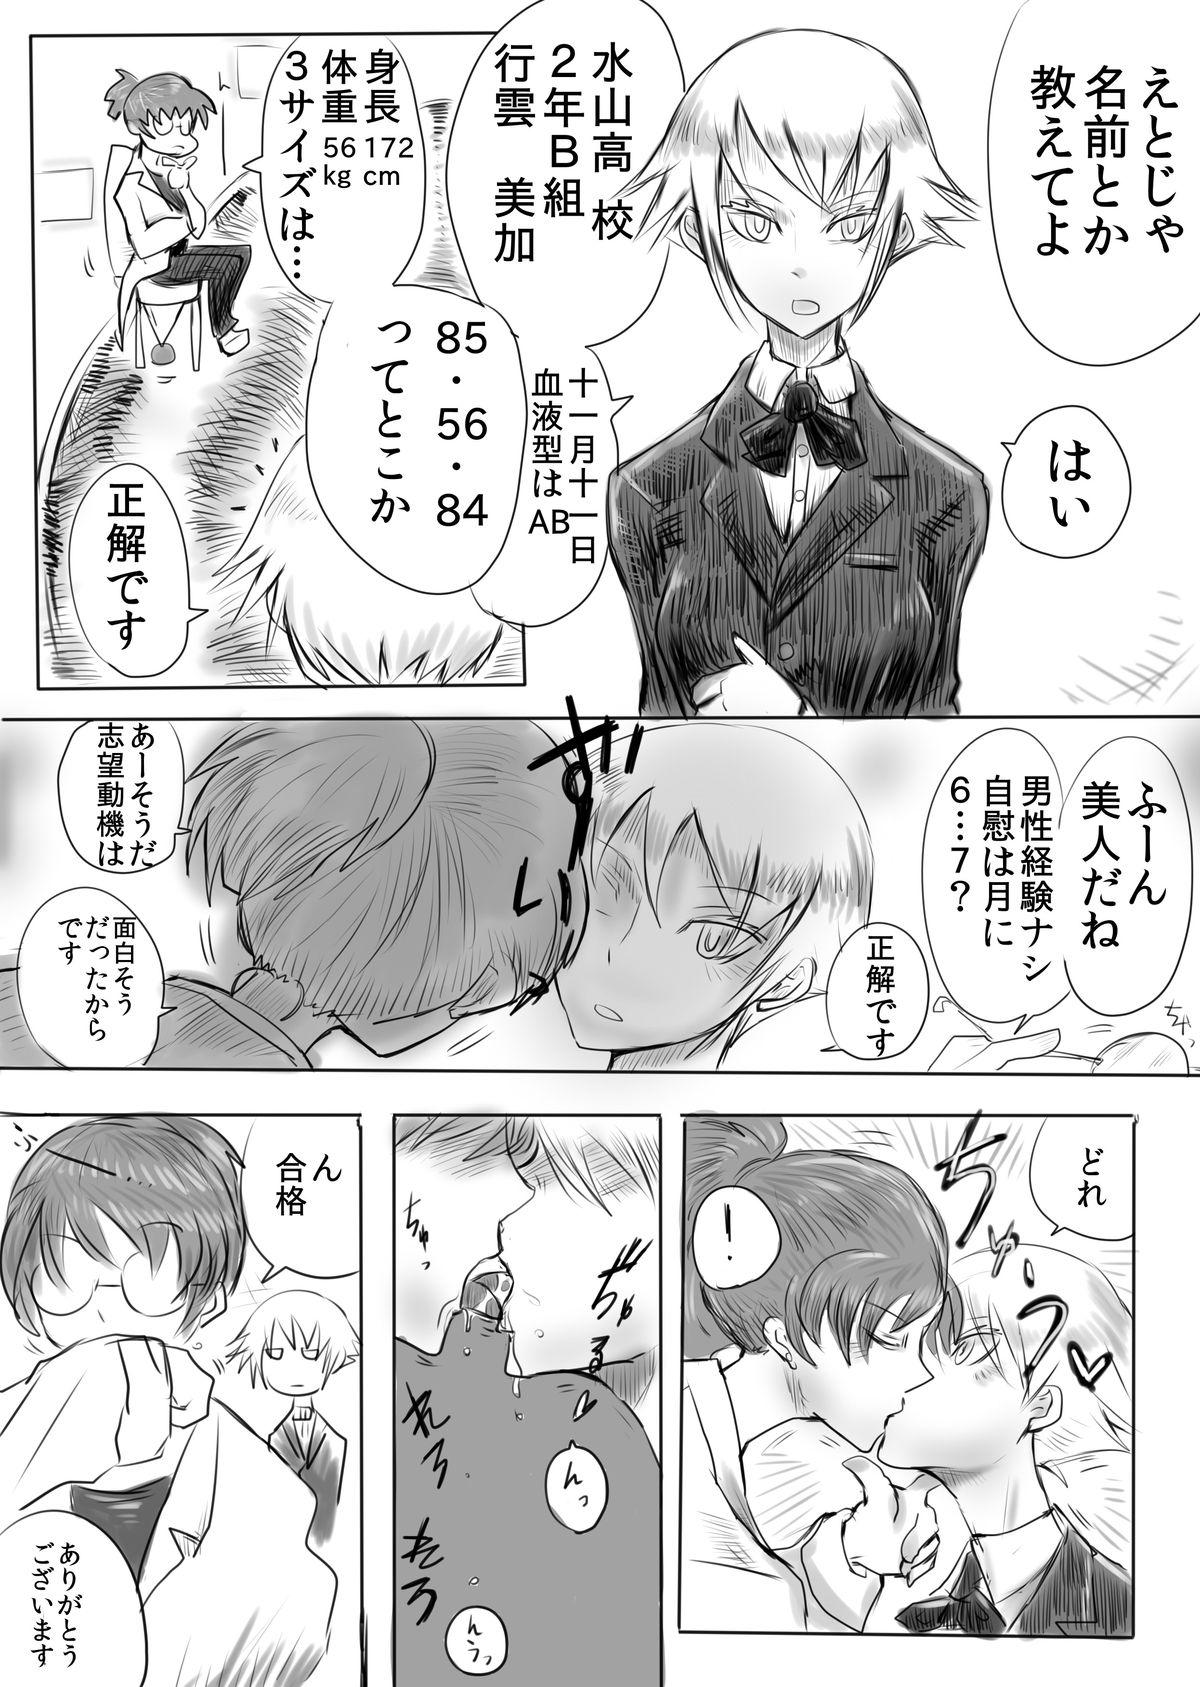 Perverted Eroi Manga Shuusaku "Baito Immoral" Old And Young - Page 2